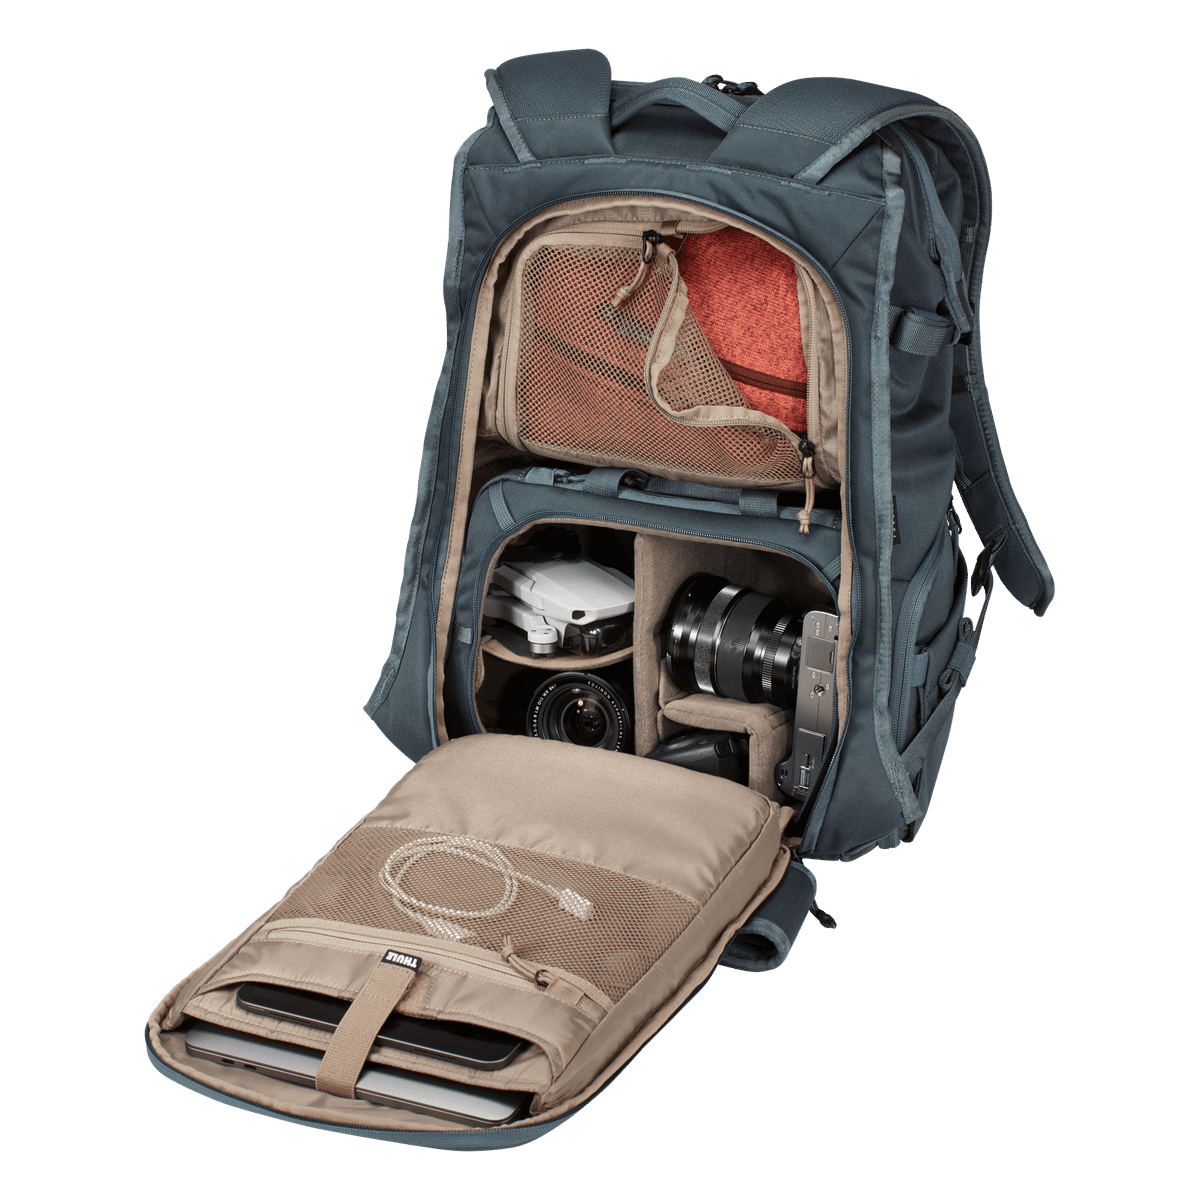 Thule Covert camera backpack DSLR 24L dark slate gray